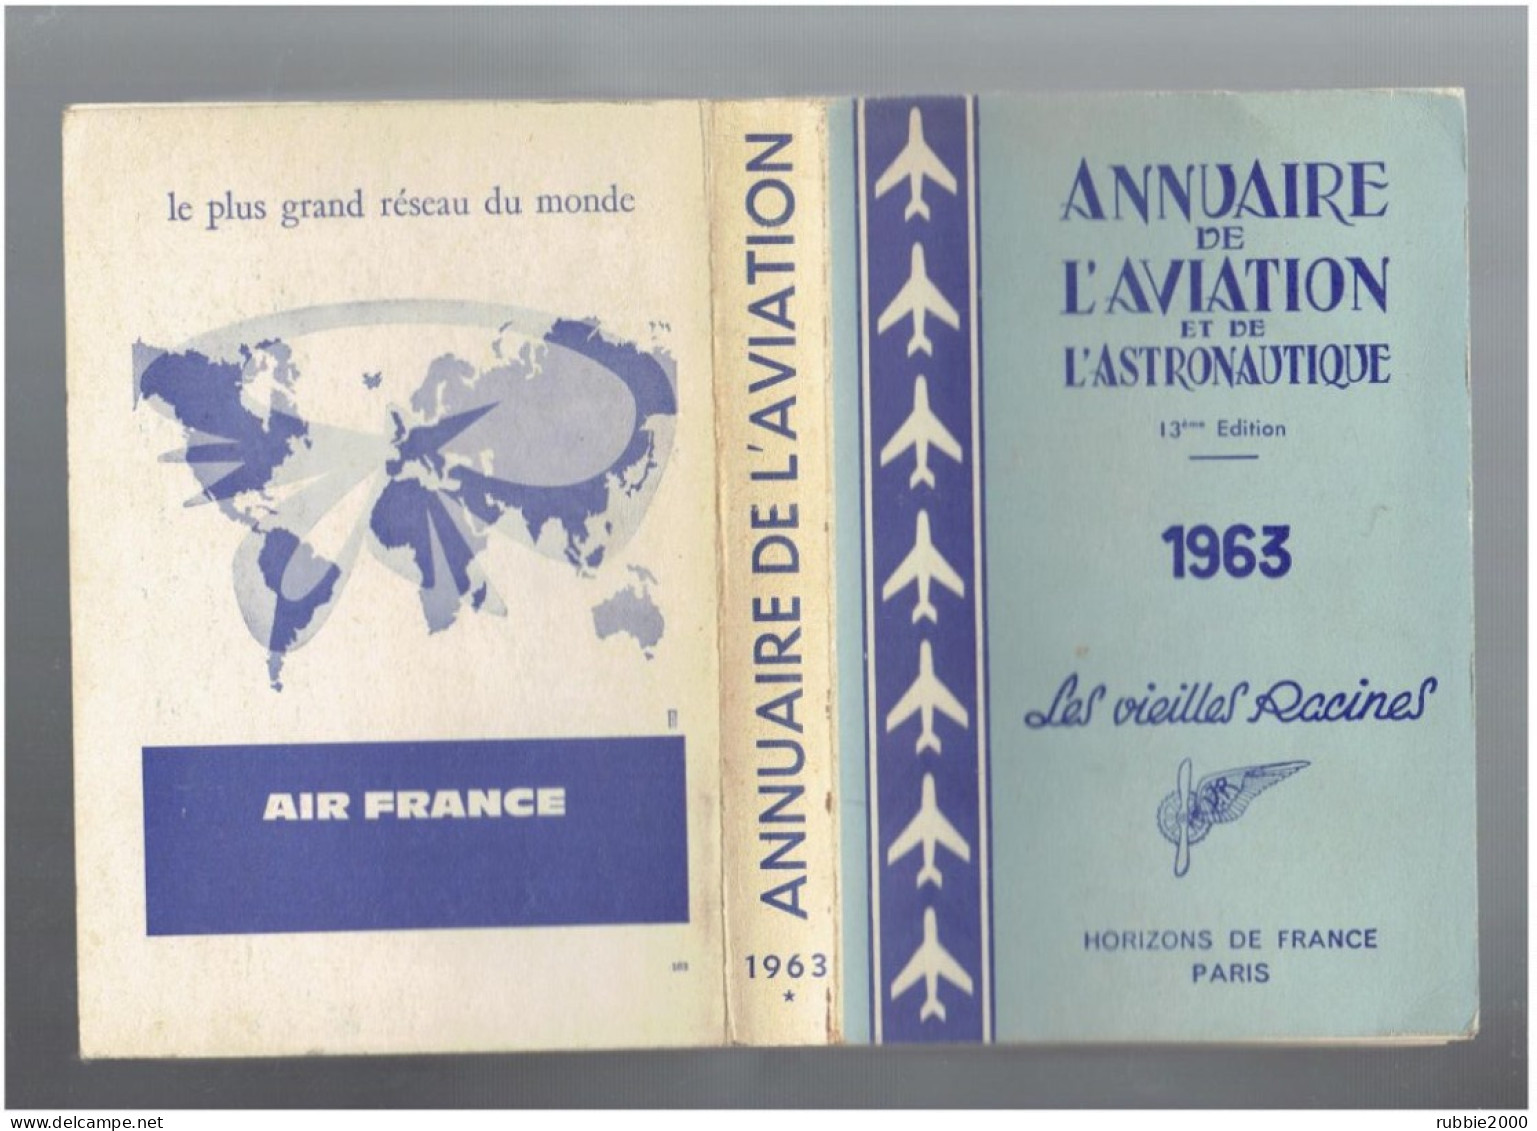 1963 ANNUAIRE DE L AVIATION ET DE L ASTRONAUTIQUE LES VIEILLES RACINES HORIZONS DE FRANCE AVION - Avion